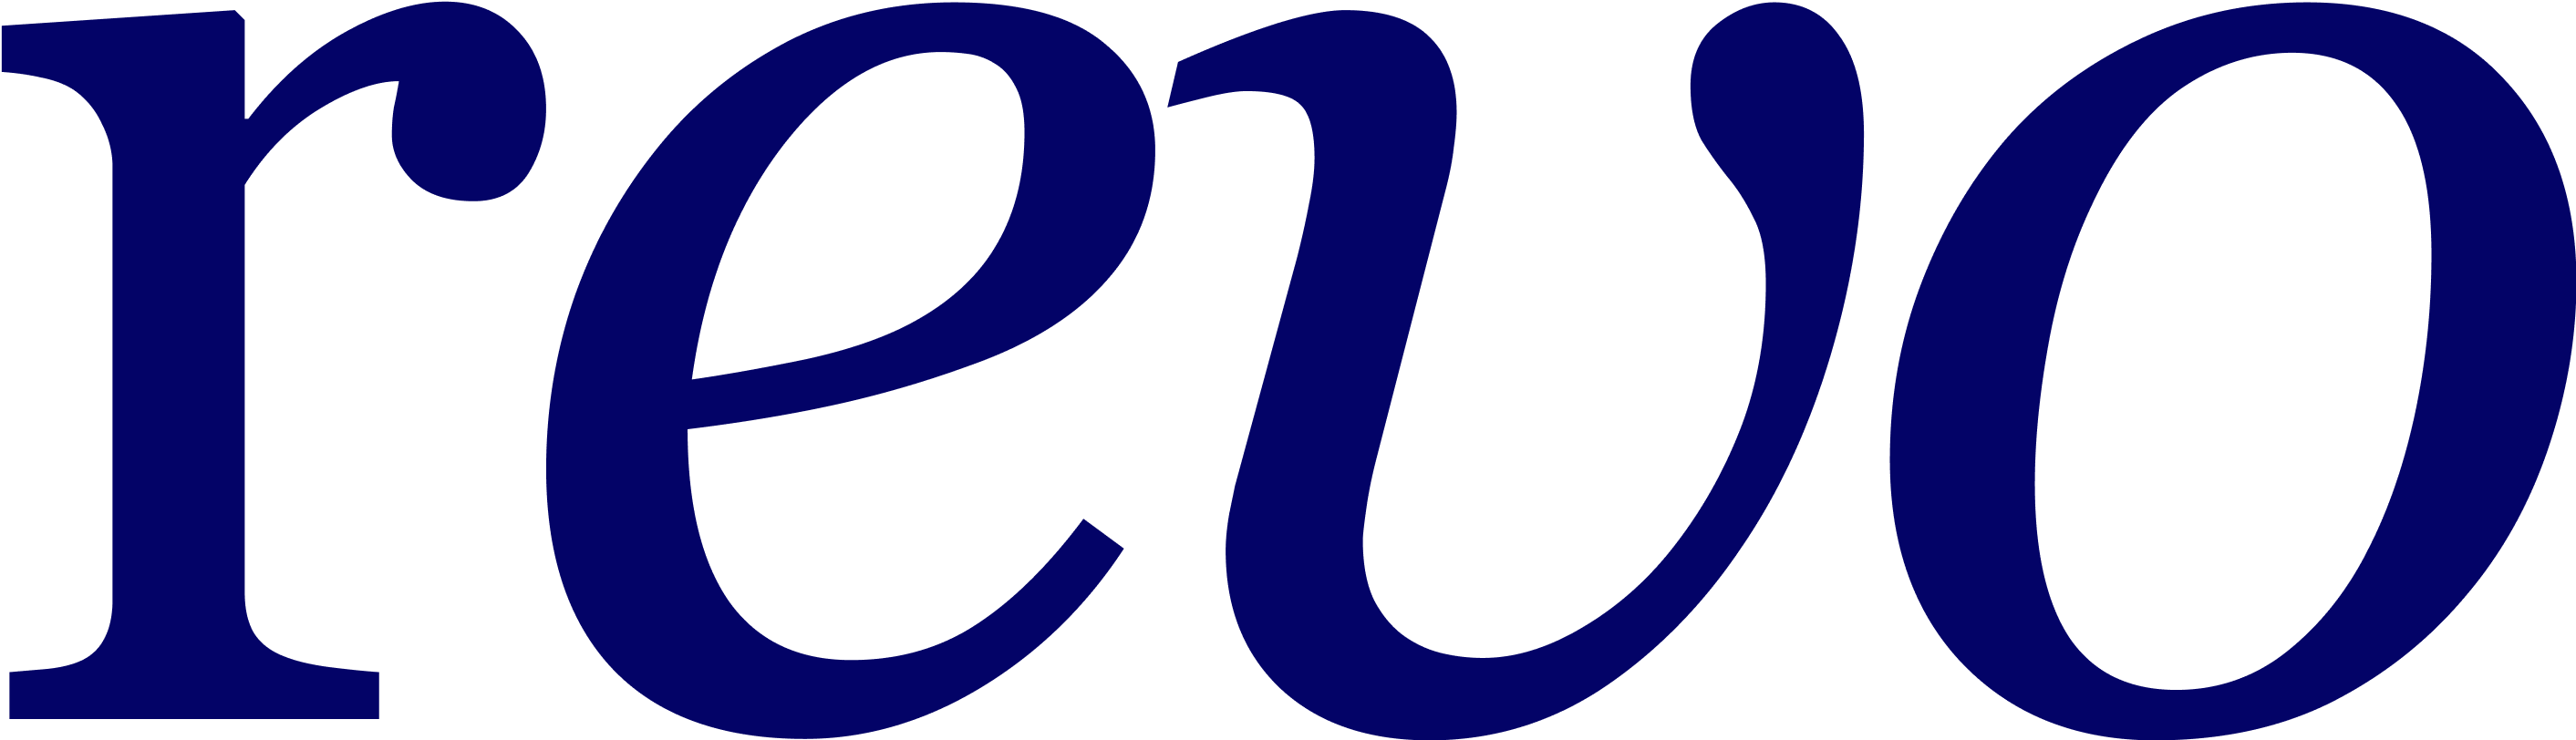 Revo_Logo (1)